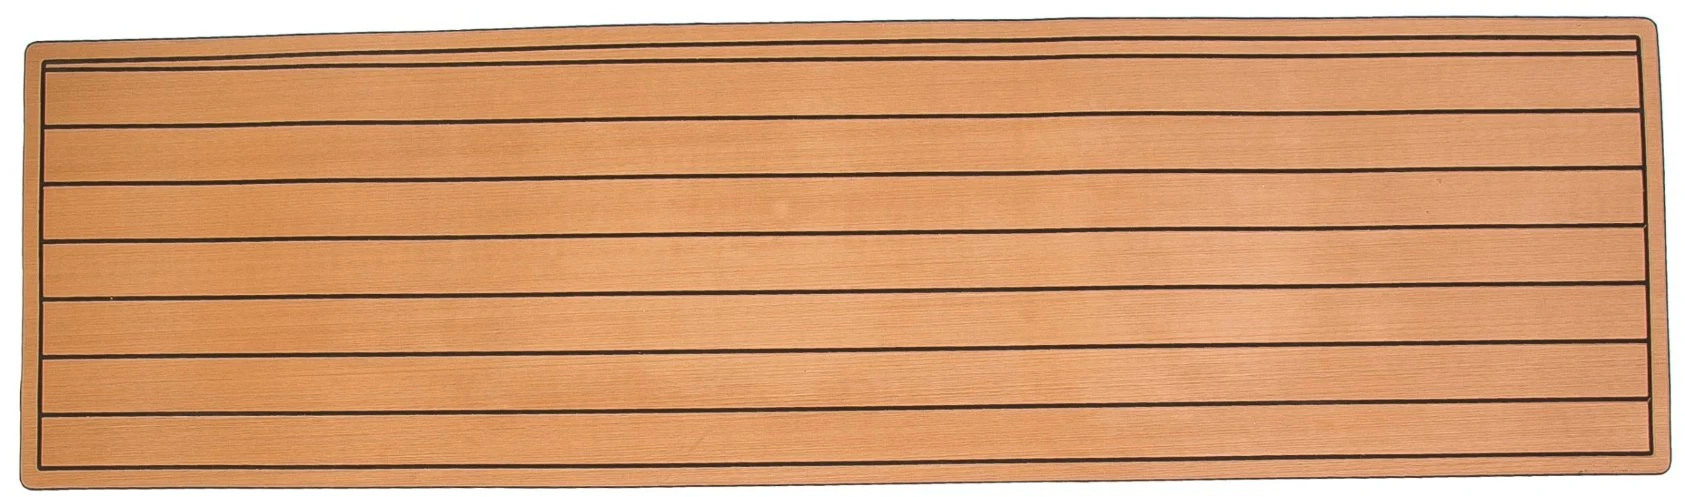 Custom лодки декорированных материала фо из тикового дерева, не скользким коврики морской из пеноматериала EVA листов для судна пол